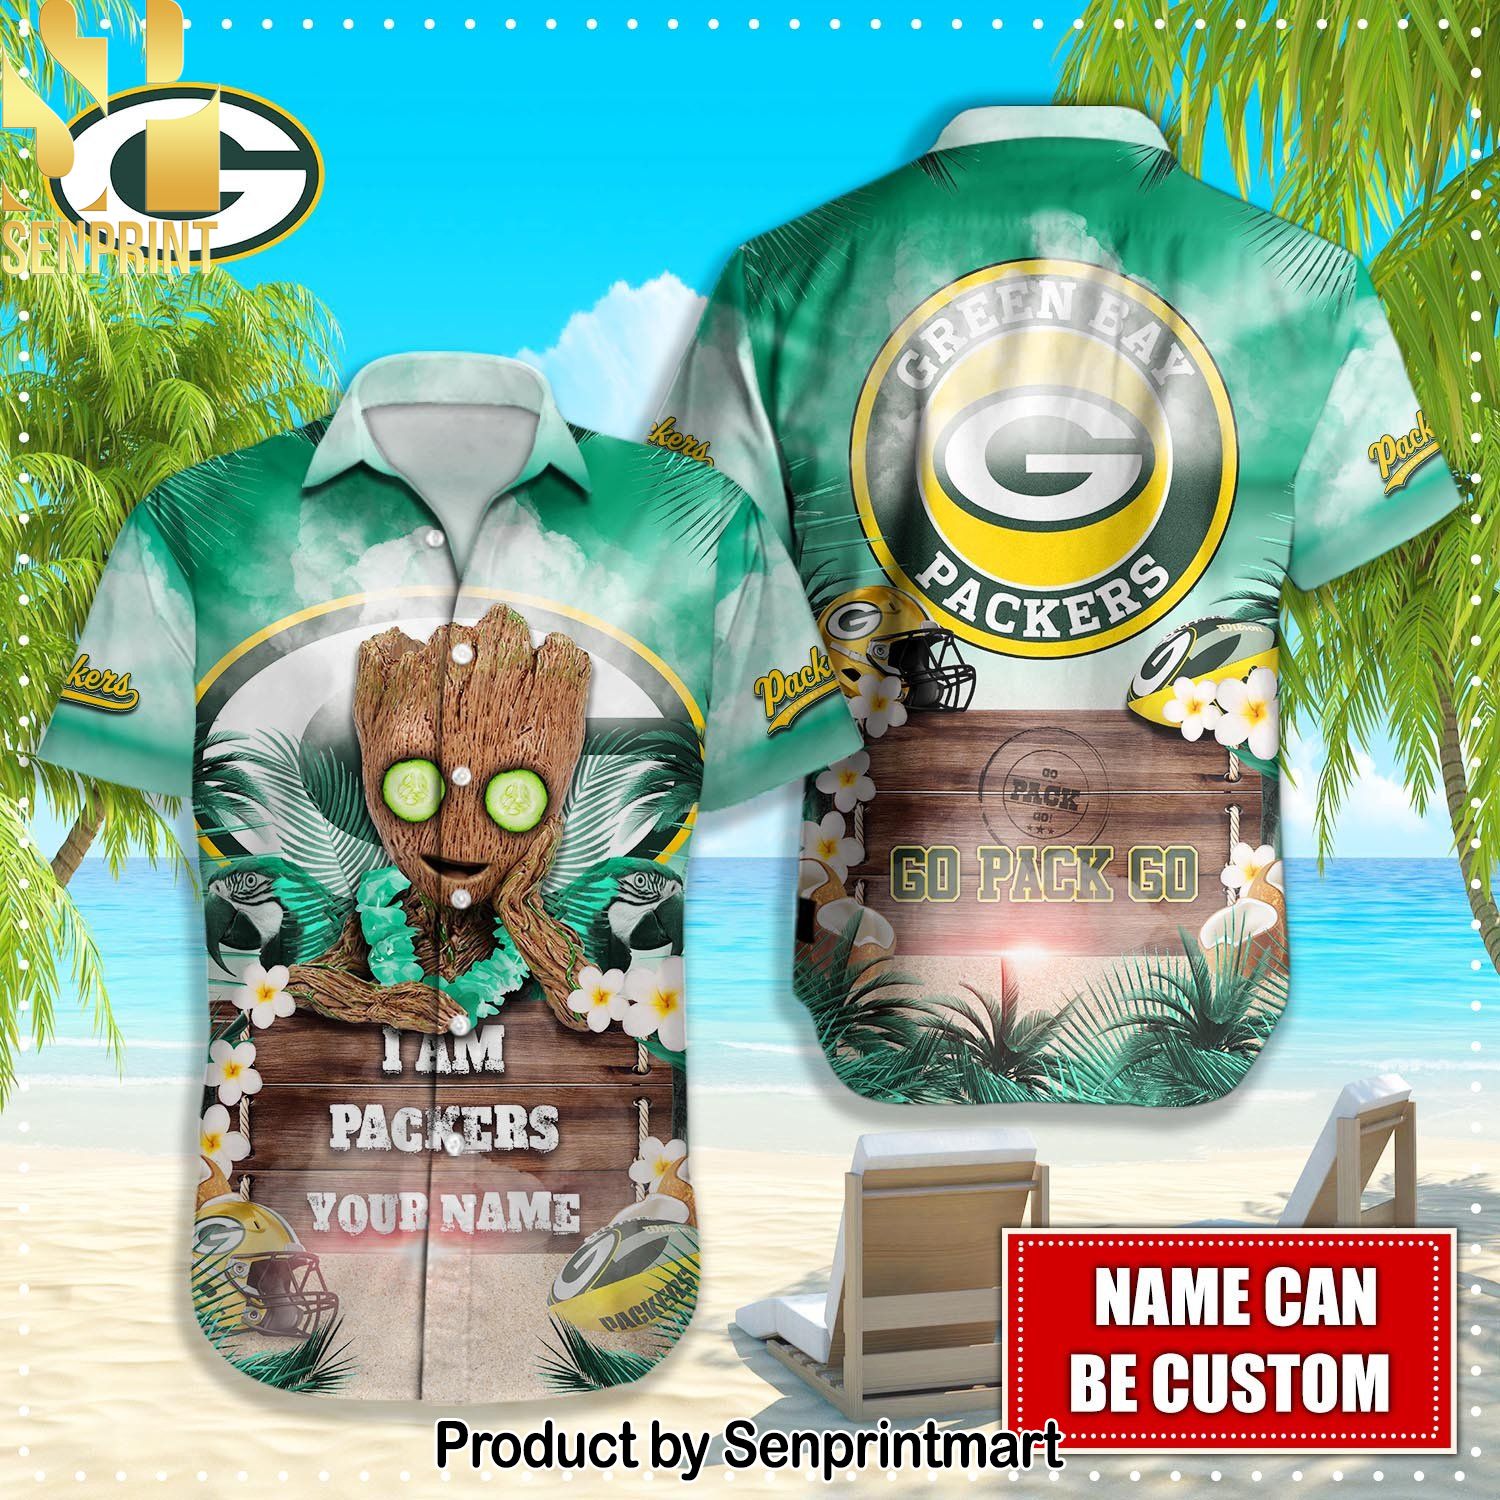 Green Bay Packers NFL Casual 3D Hawaiian Shirt and Shorts